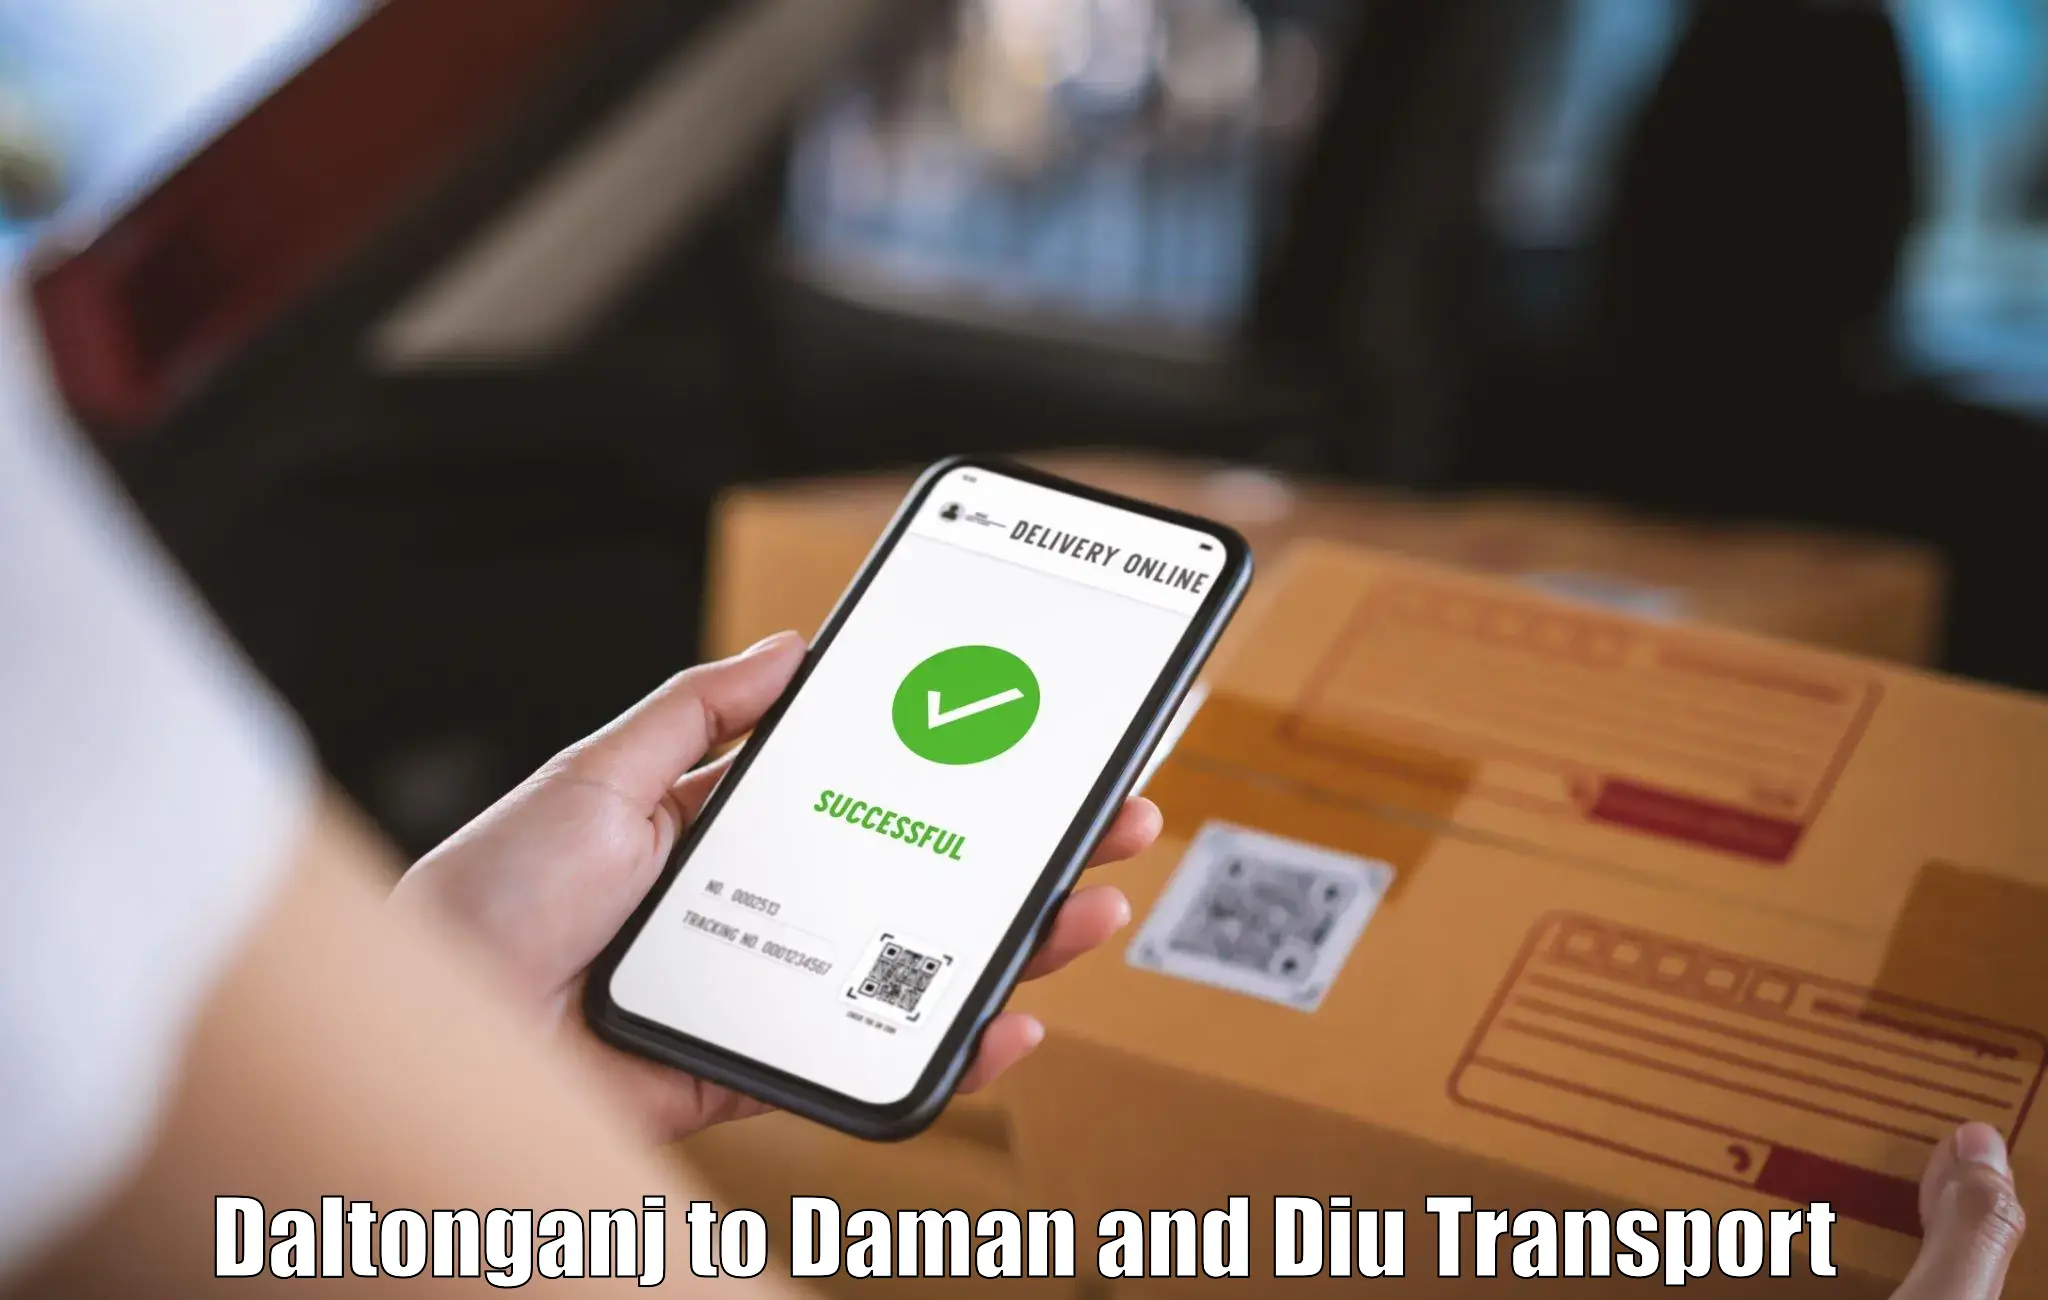 Daily transport service Daltonganj to Daman and Diu